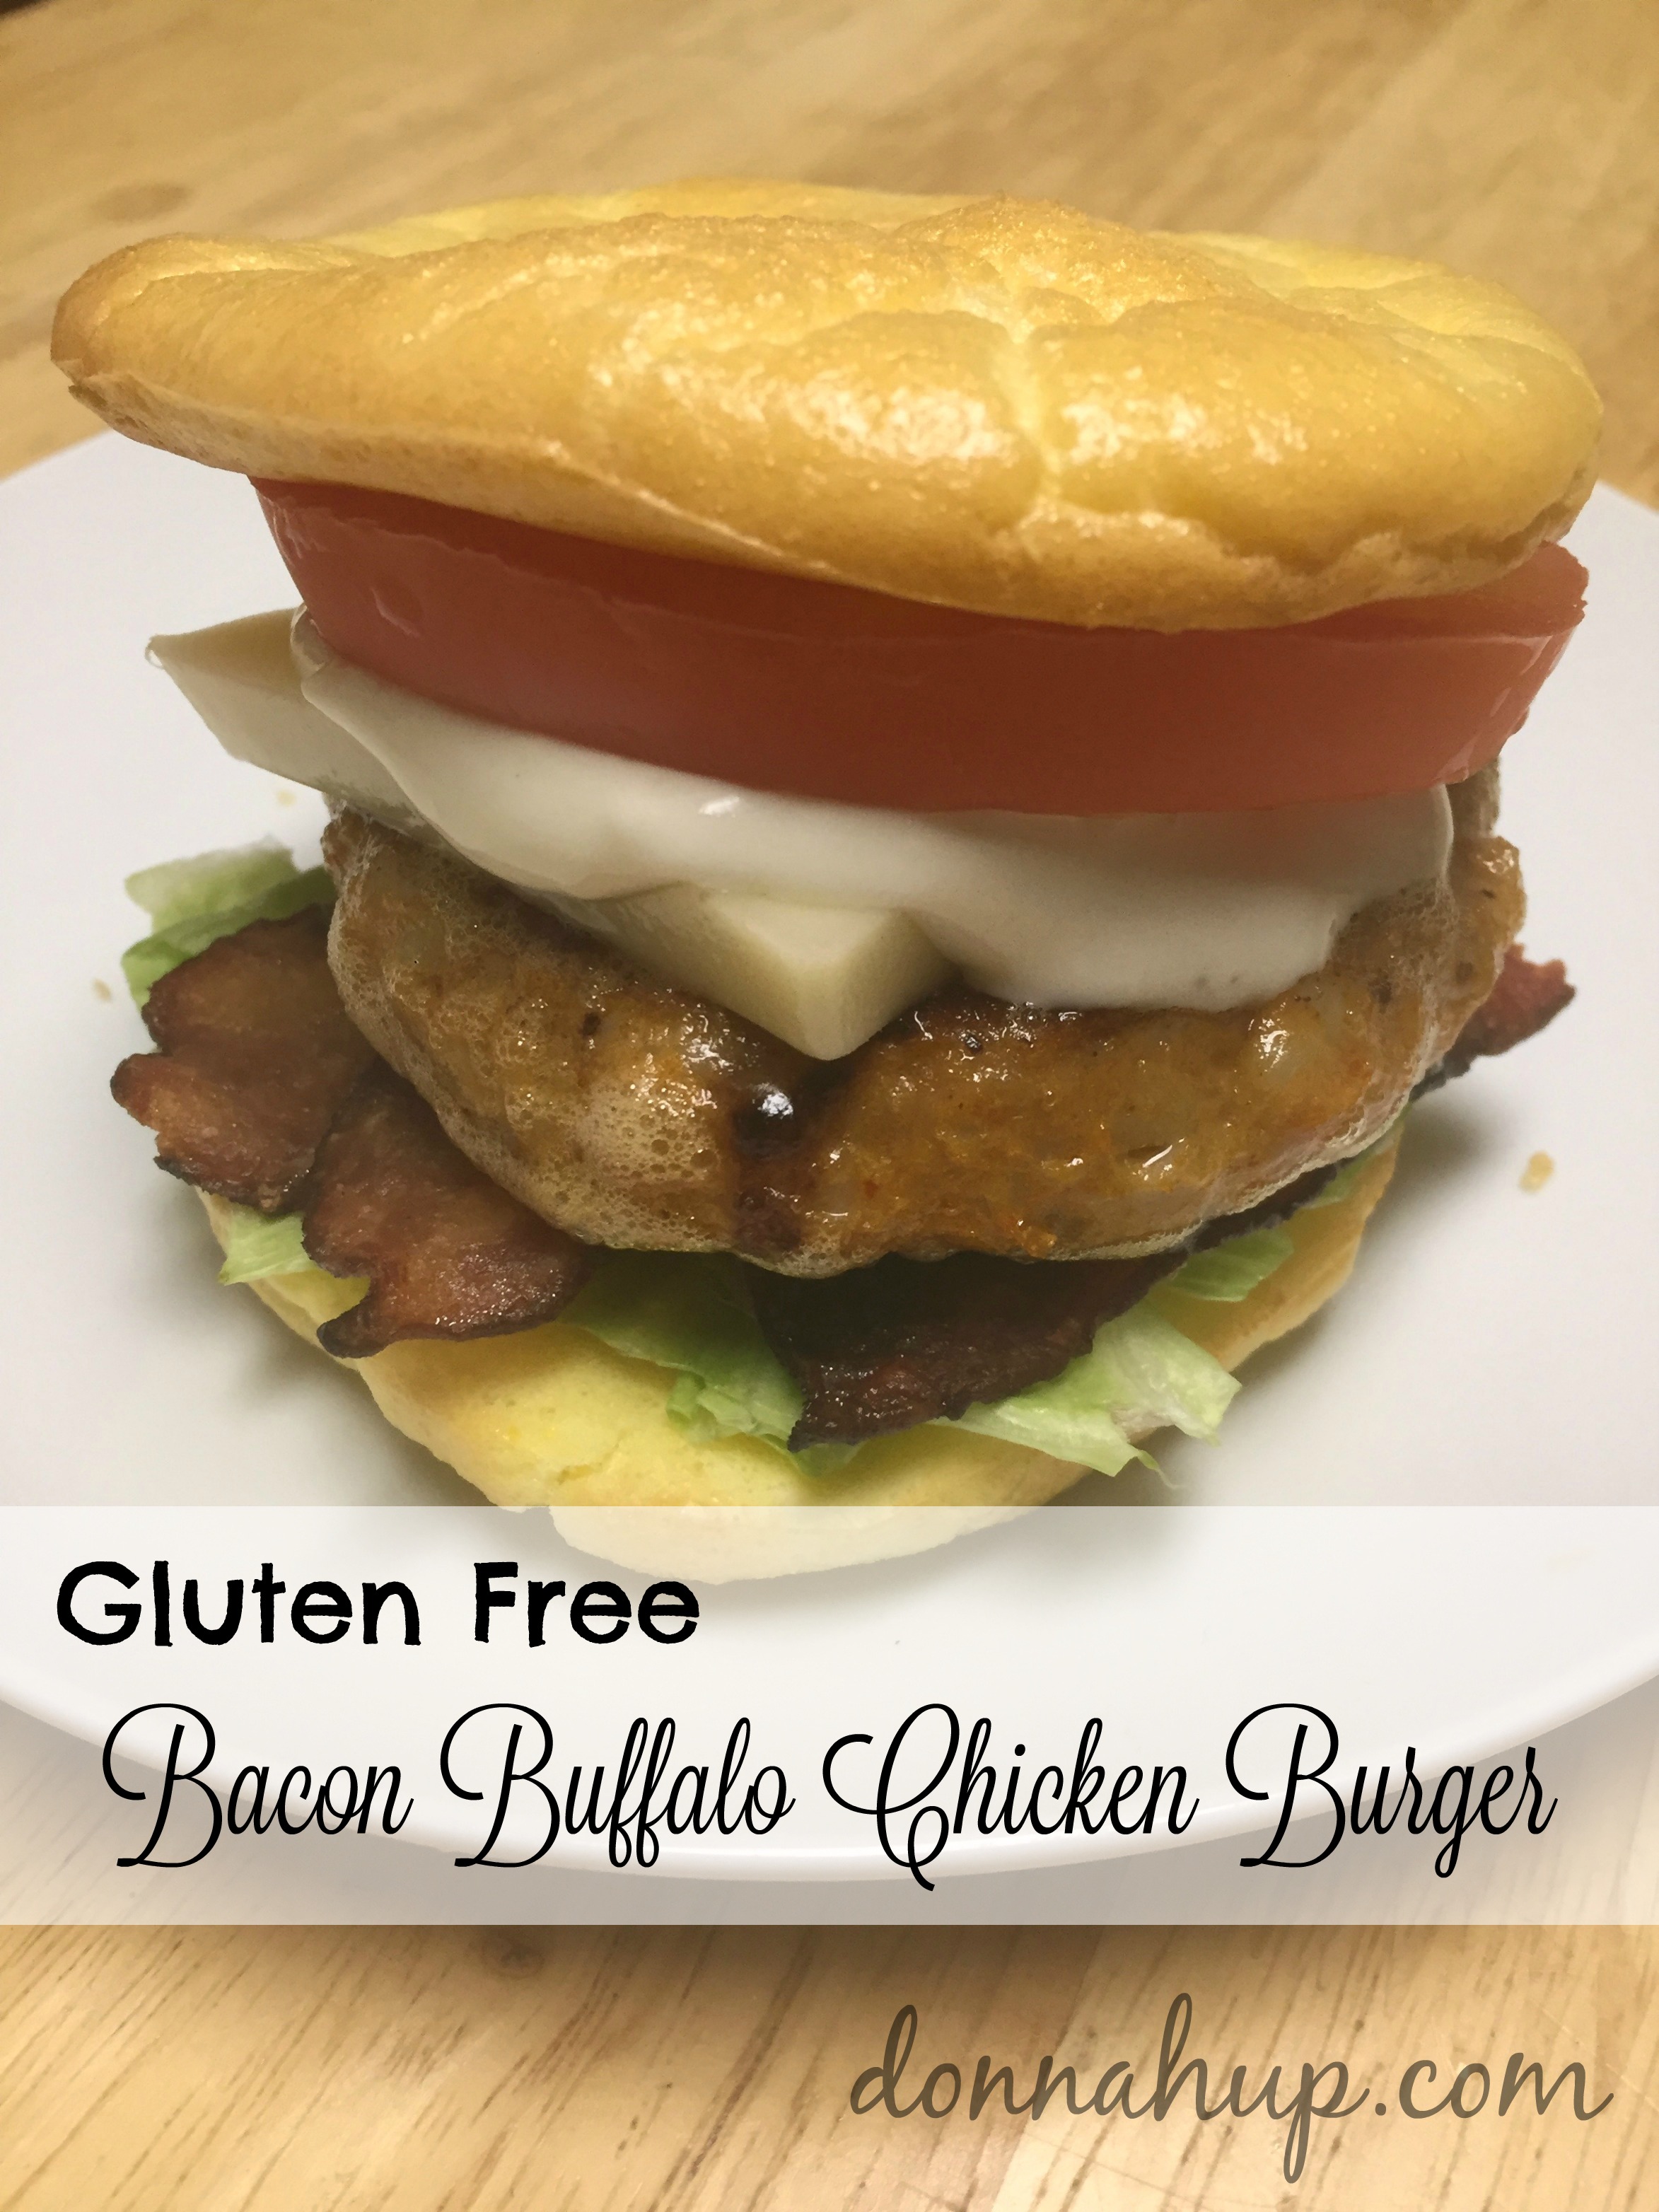 Gluten Free Bacon Buffalo Chicken Burger